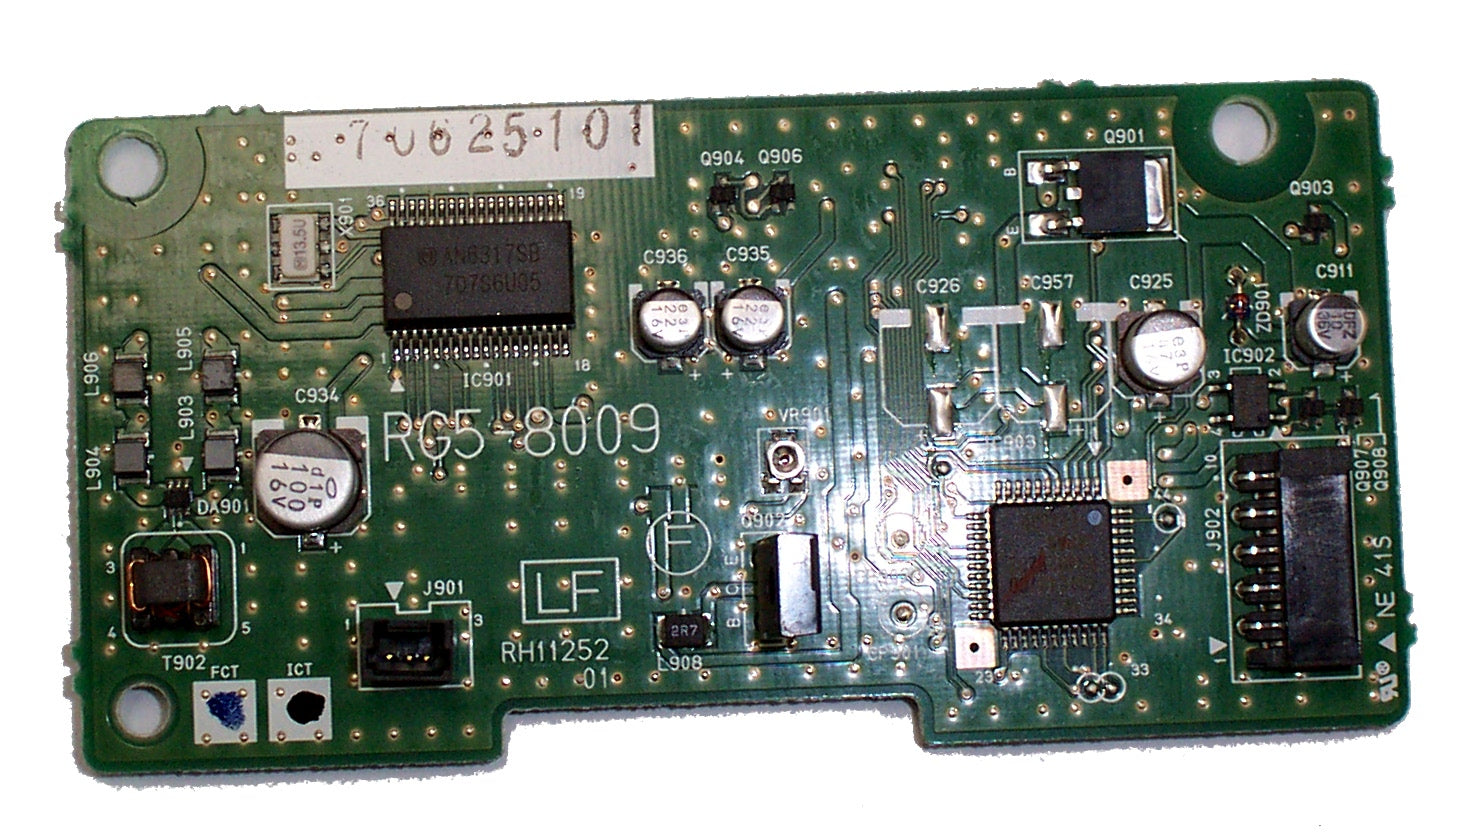 HP Refurbished RG5-8009 Cartridge Memory Controller Board - Between ECU and the toner cartridge memory antenna